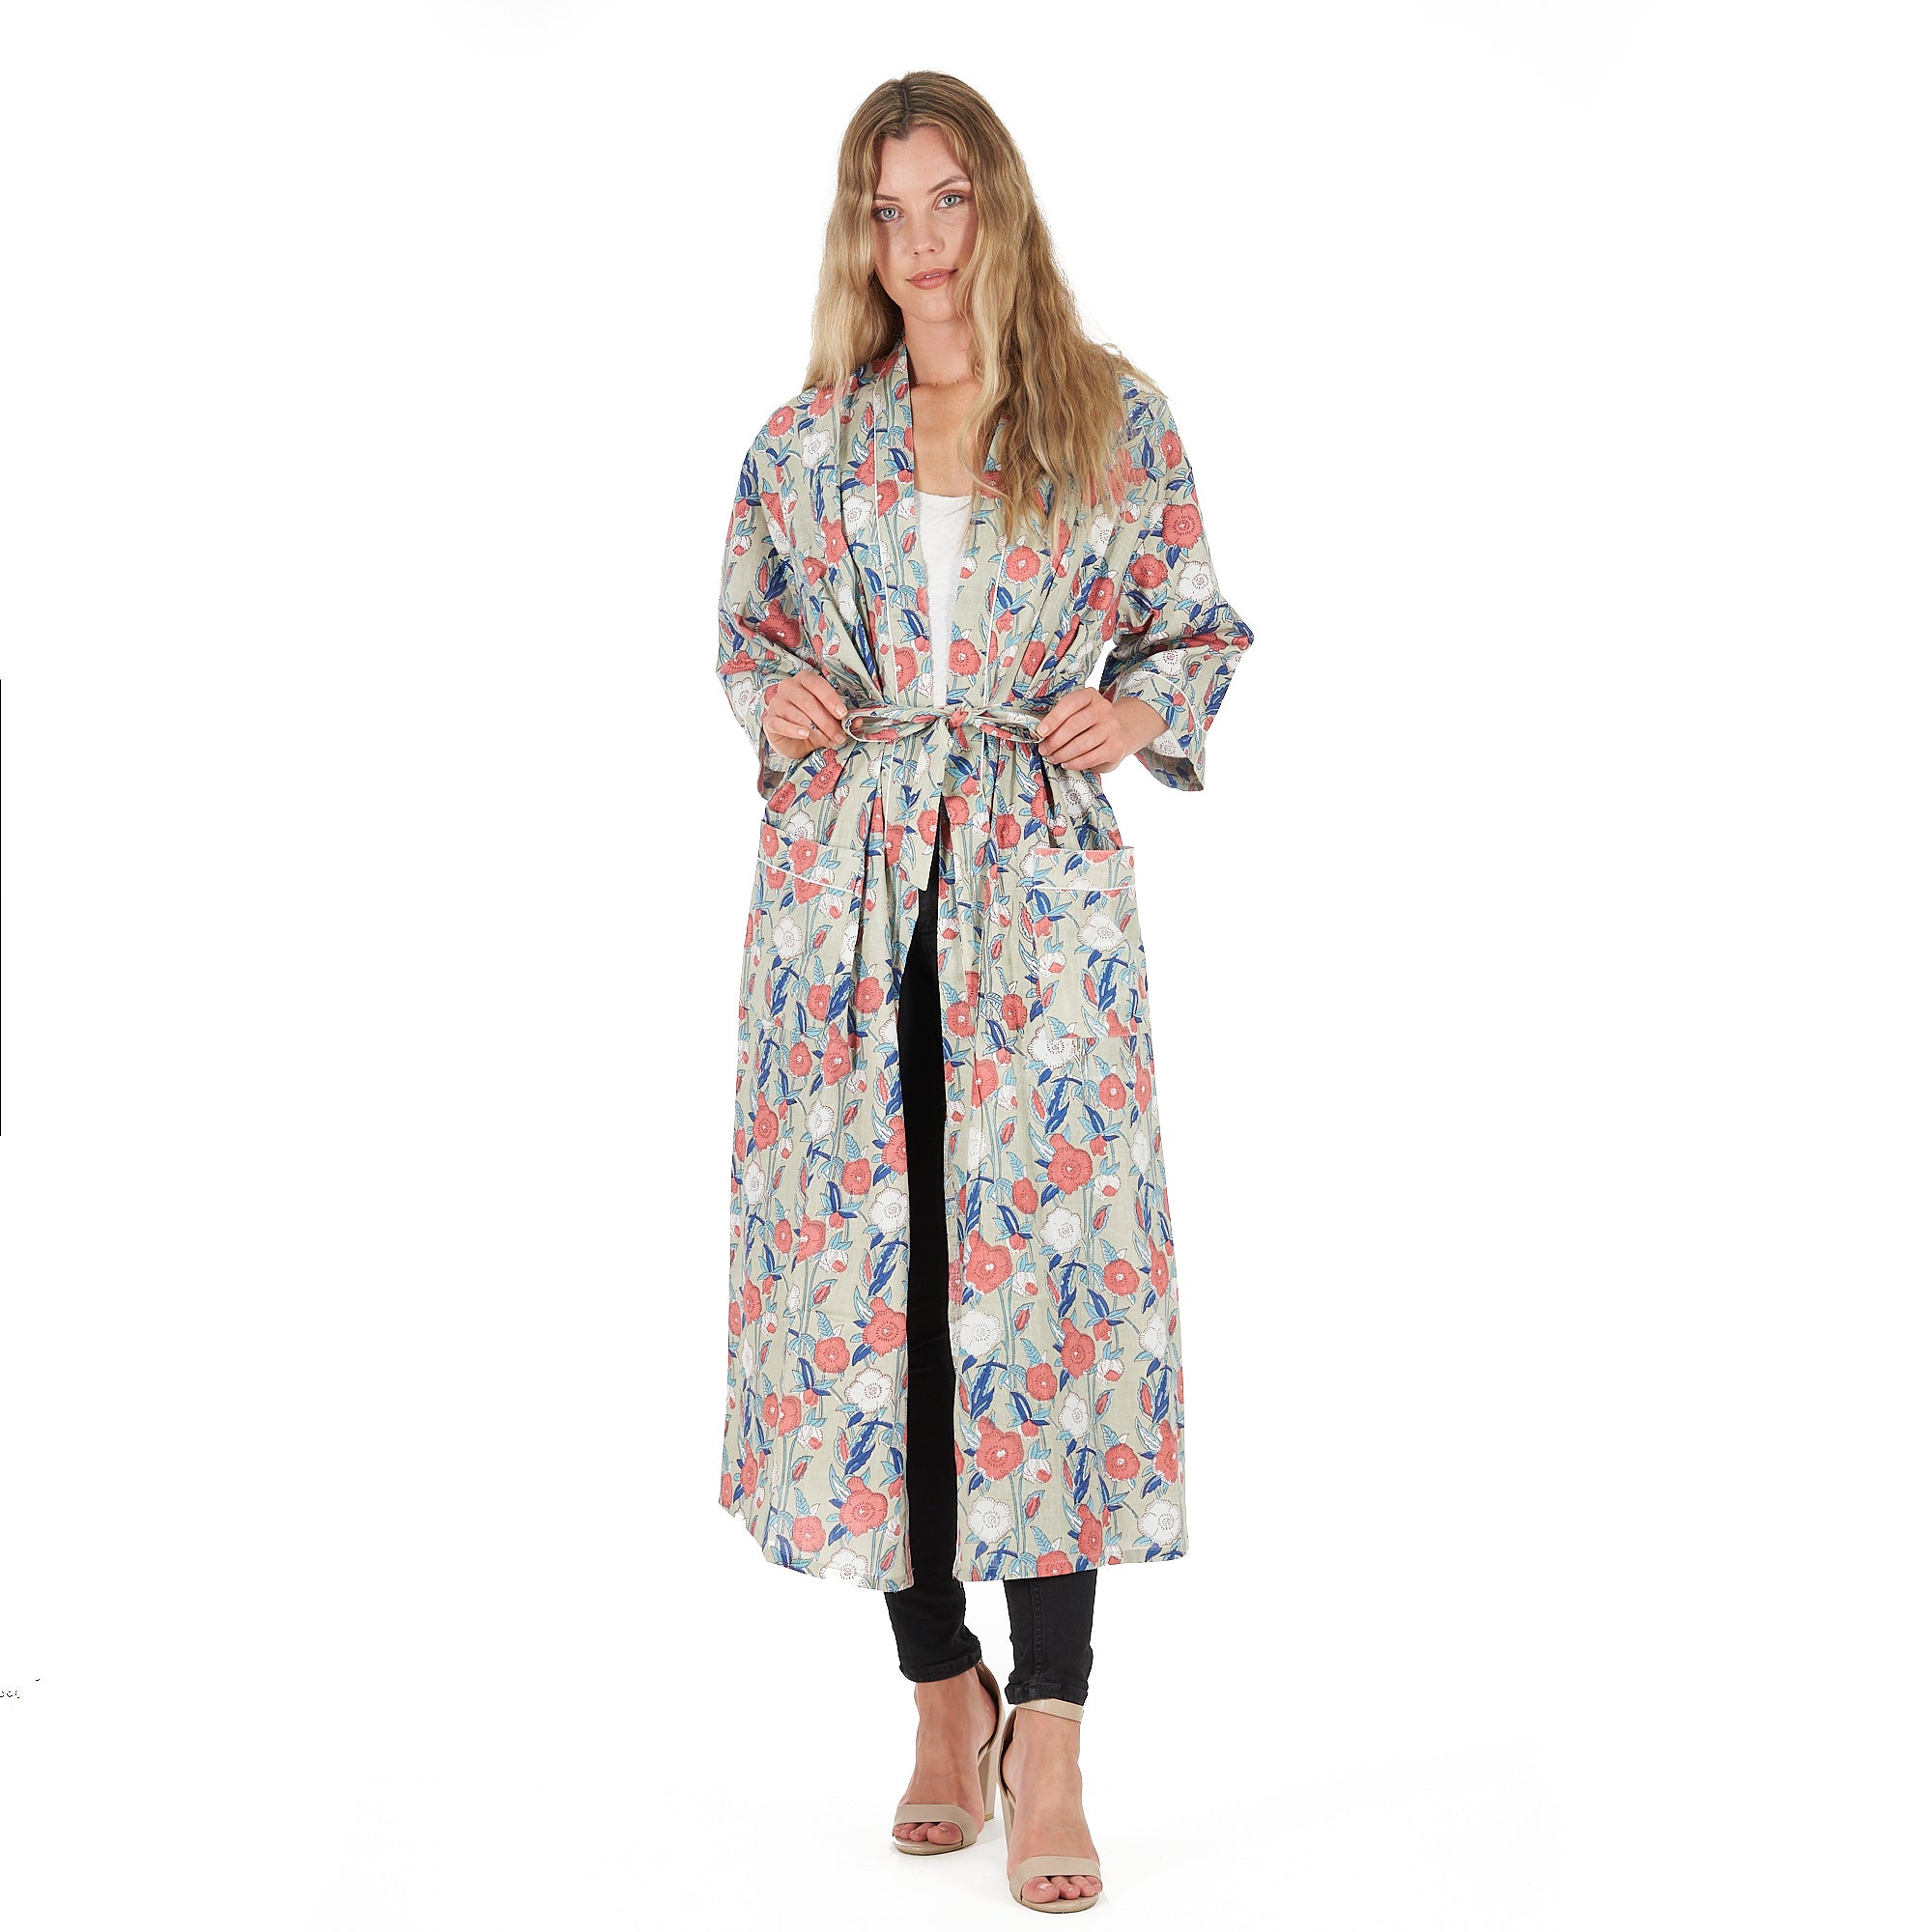 'Leisurely Luxe' 100% Cotton Kimono Robe